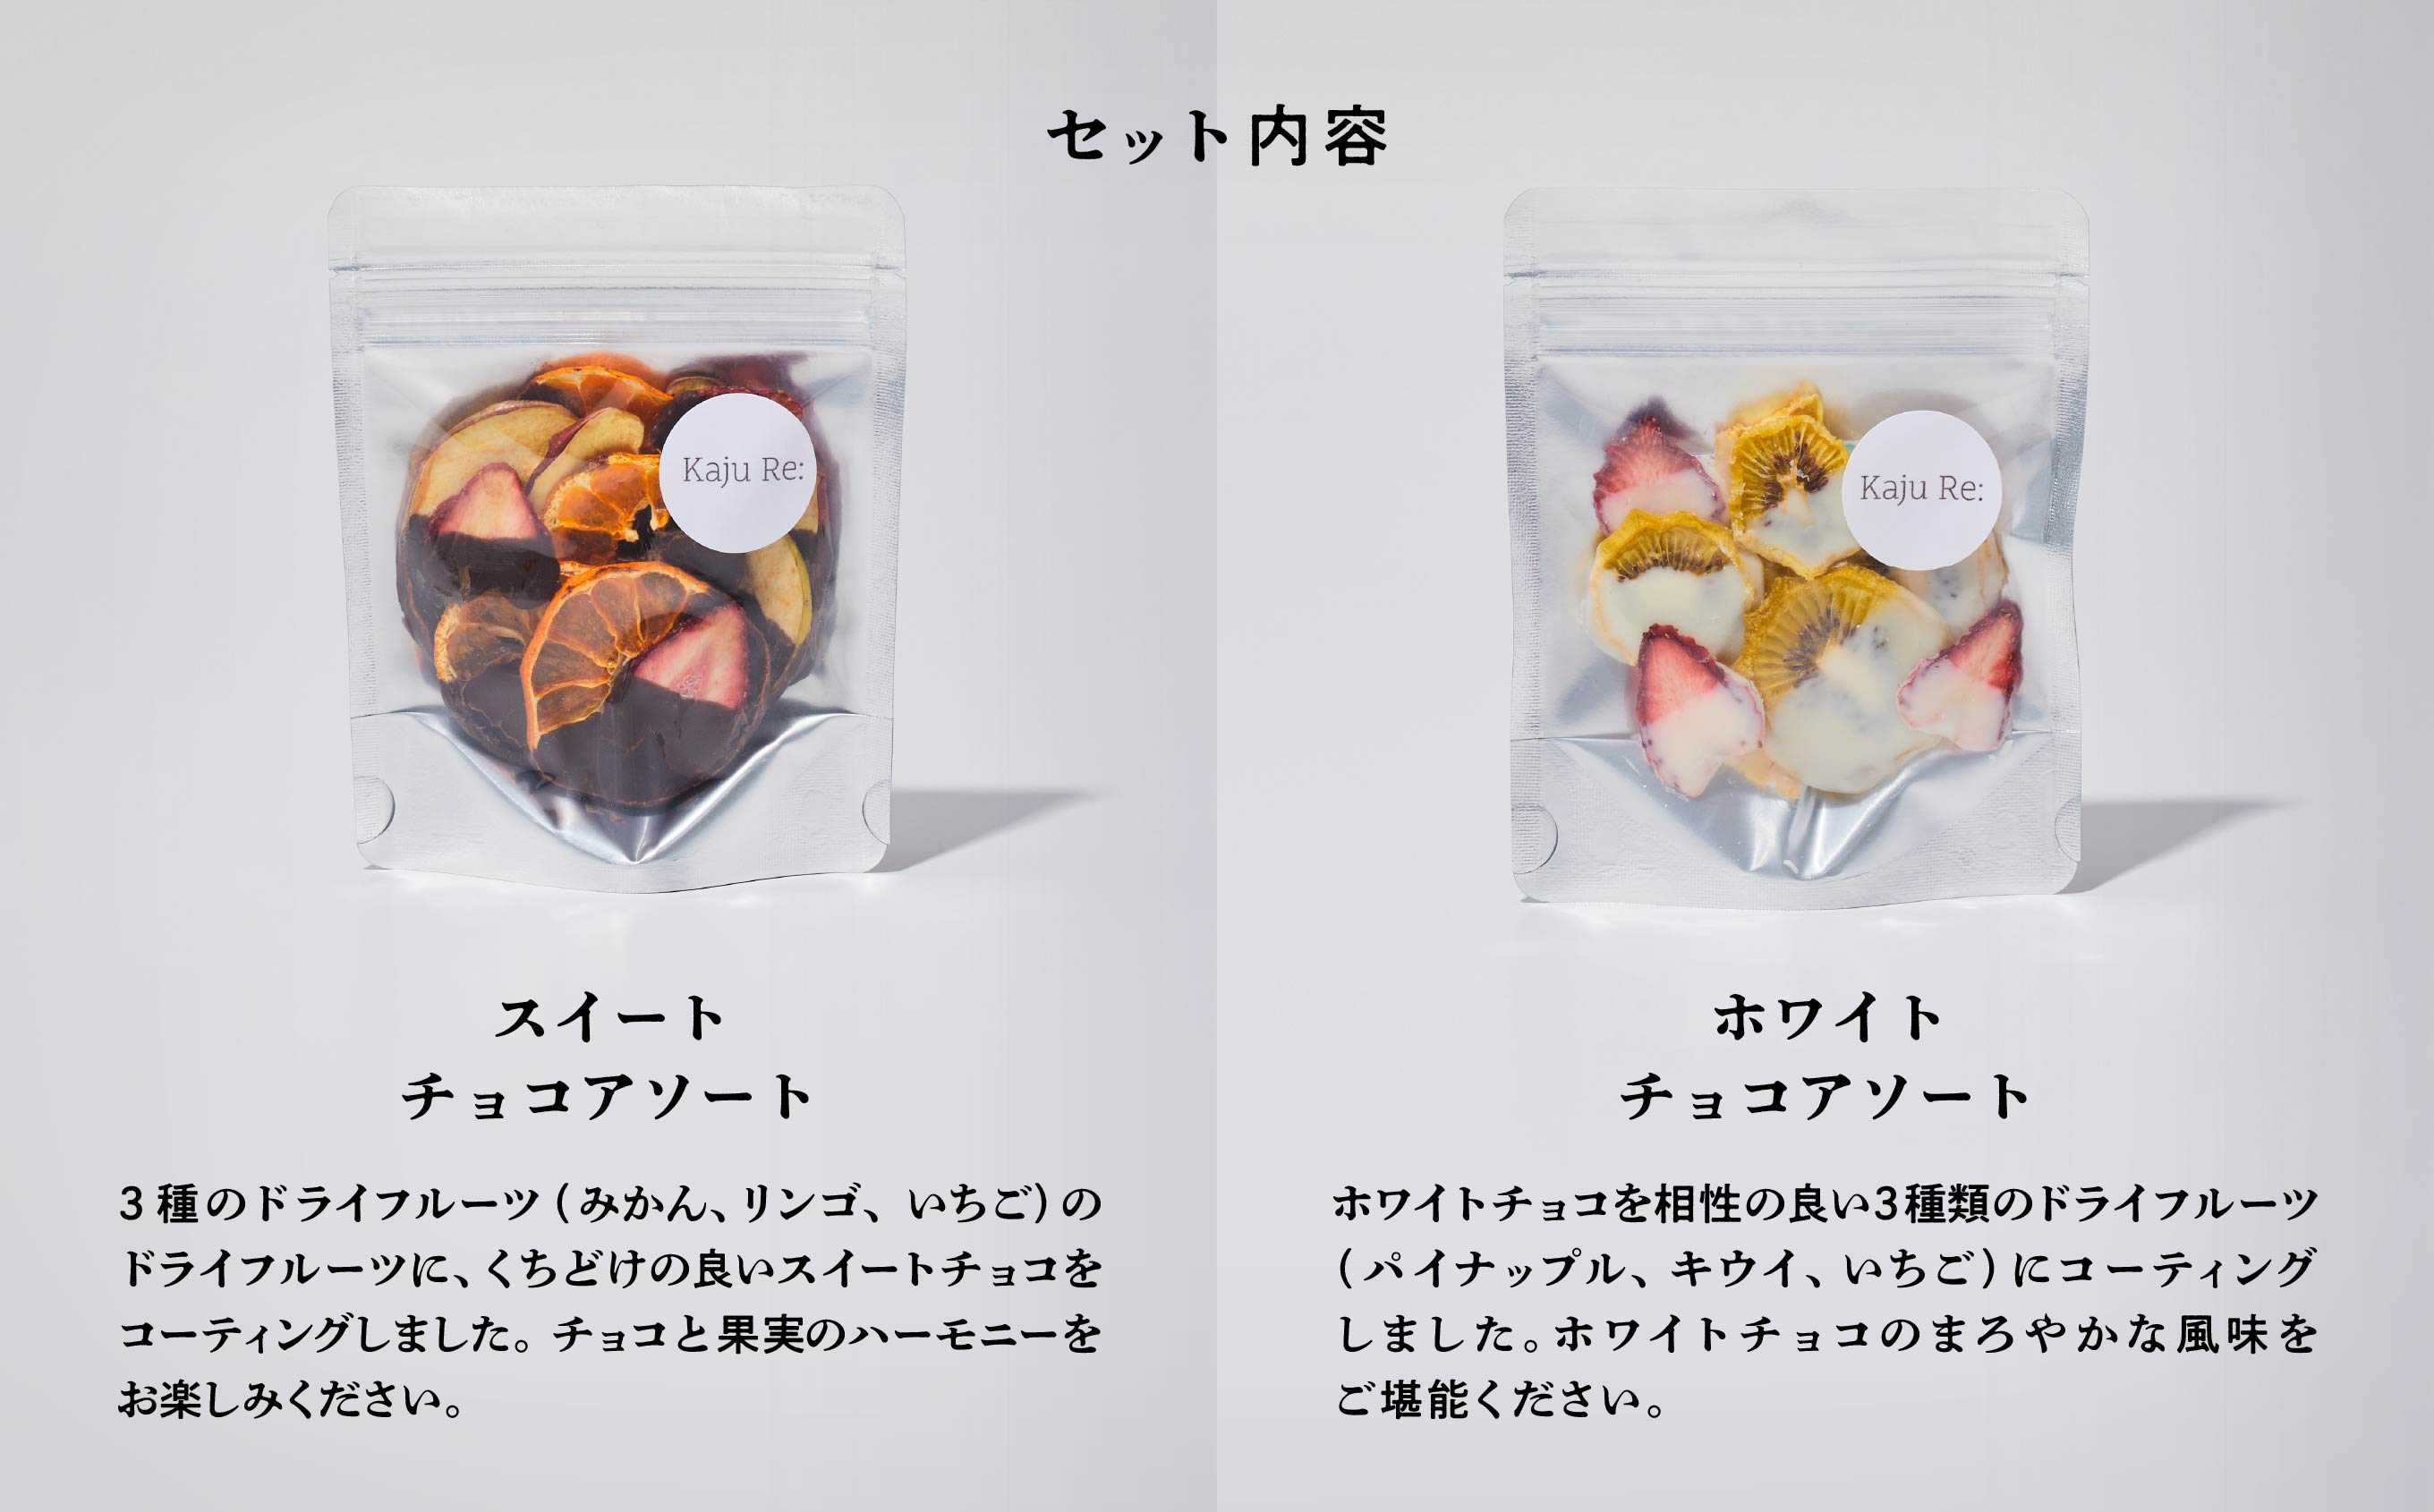 チョコKaju Re:ドライフルーツ チョコアソート2種セット  011049